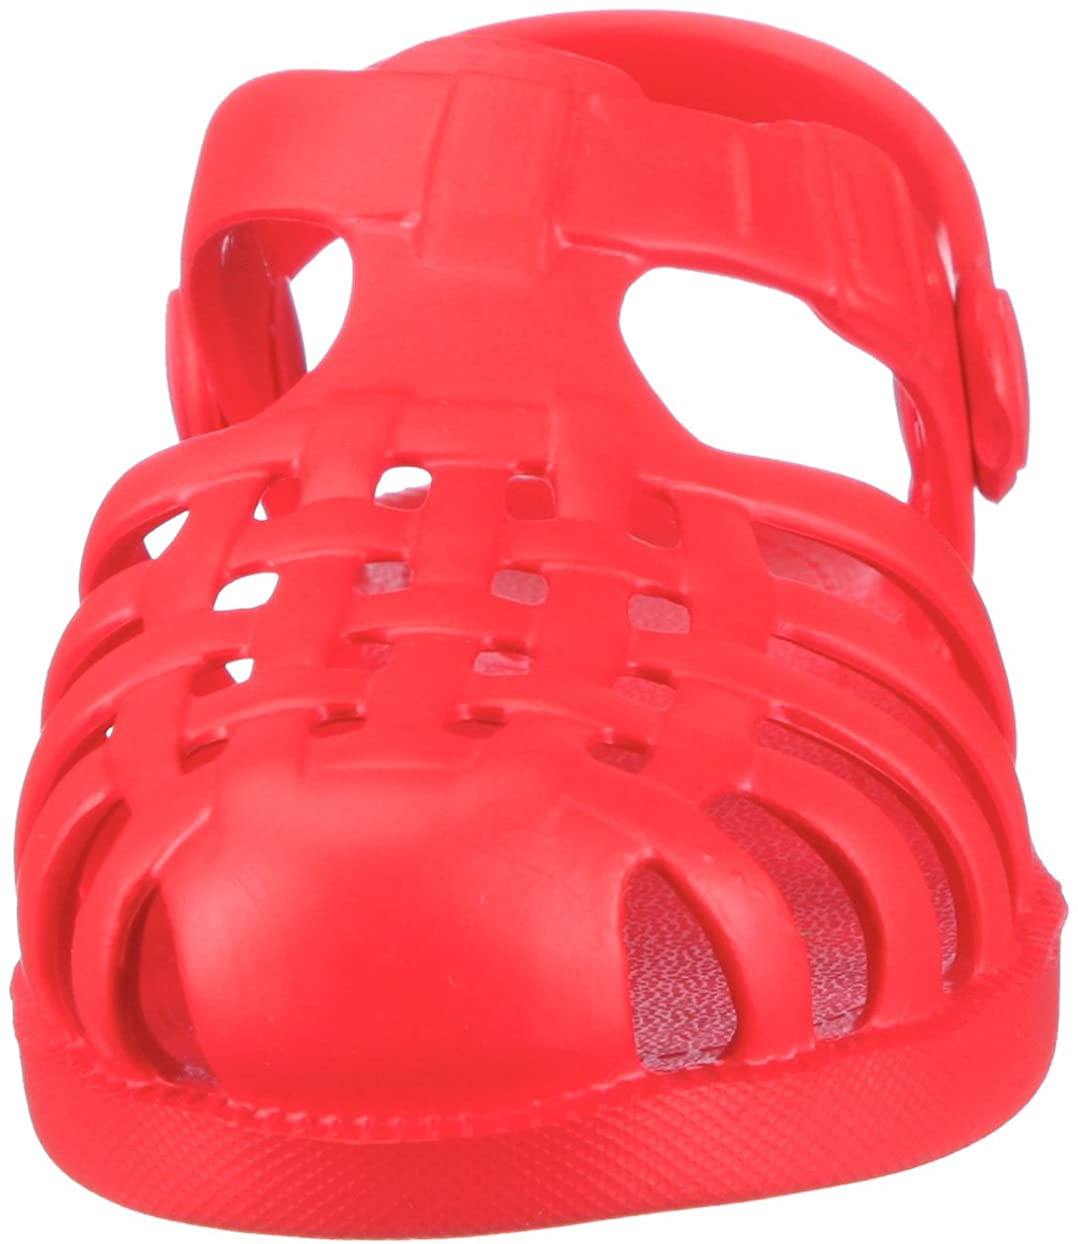 Acqua Unisex Bambini Playshoes Scarpe da Mare con Protezione UV Punti 